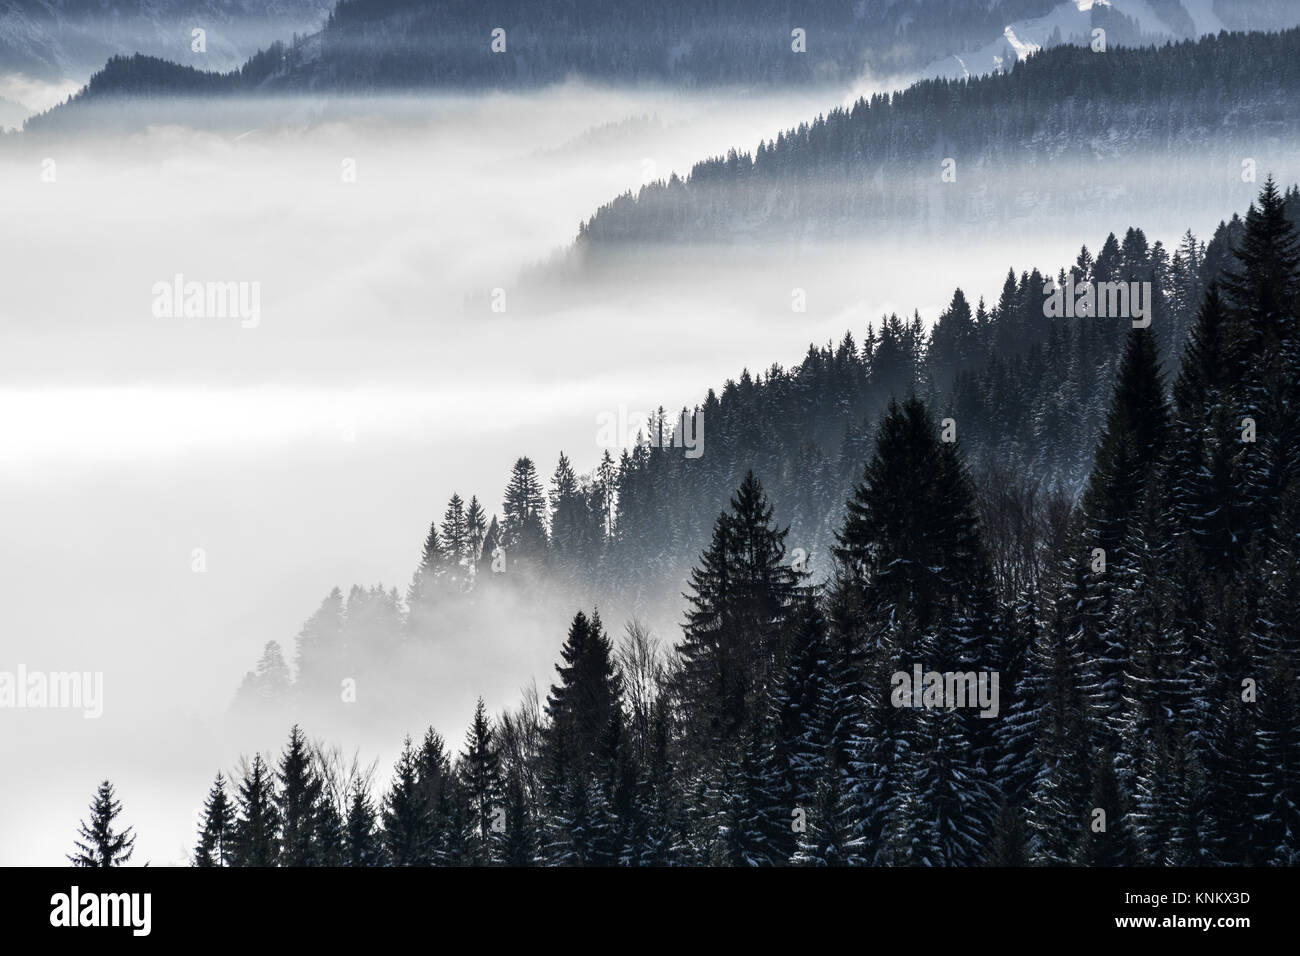 Die bewaldeten Berghang in niedrig liegenden Tal Nebel mit Silhouetten von immergrünen Nadelbäumen eingehüllt in Nebel. Wunderschöne verschneite Winterlandschaft in den Alpen, Bayern, Deutschland. Stockfoto